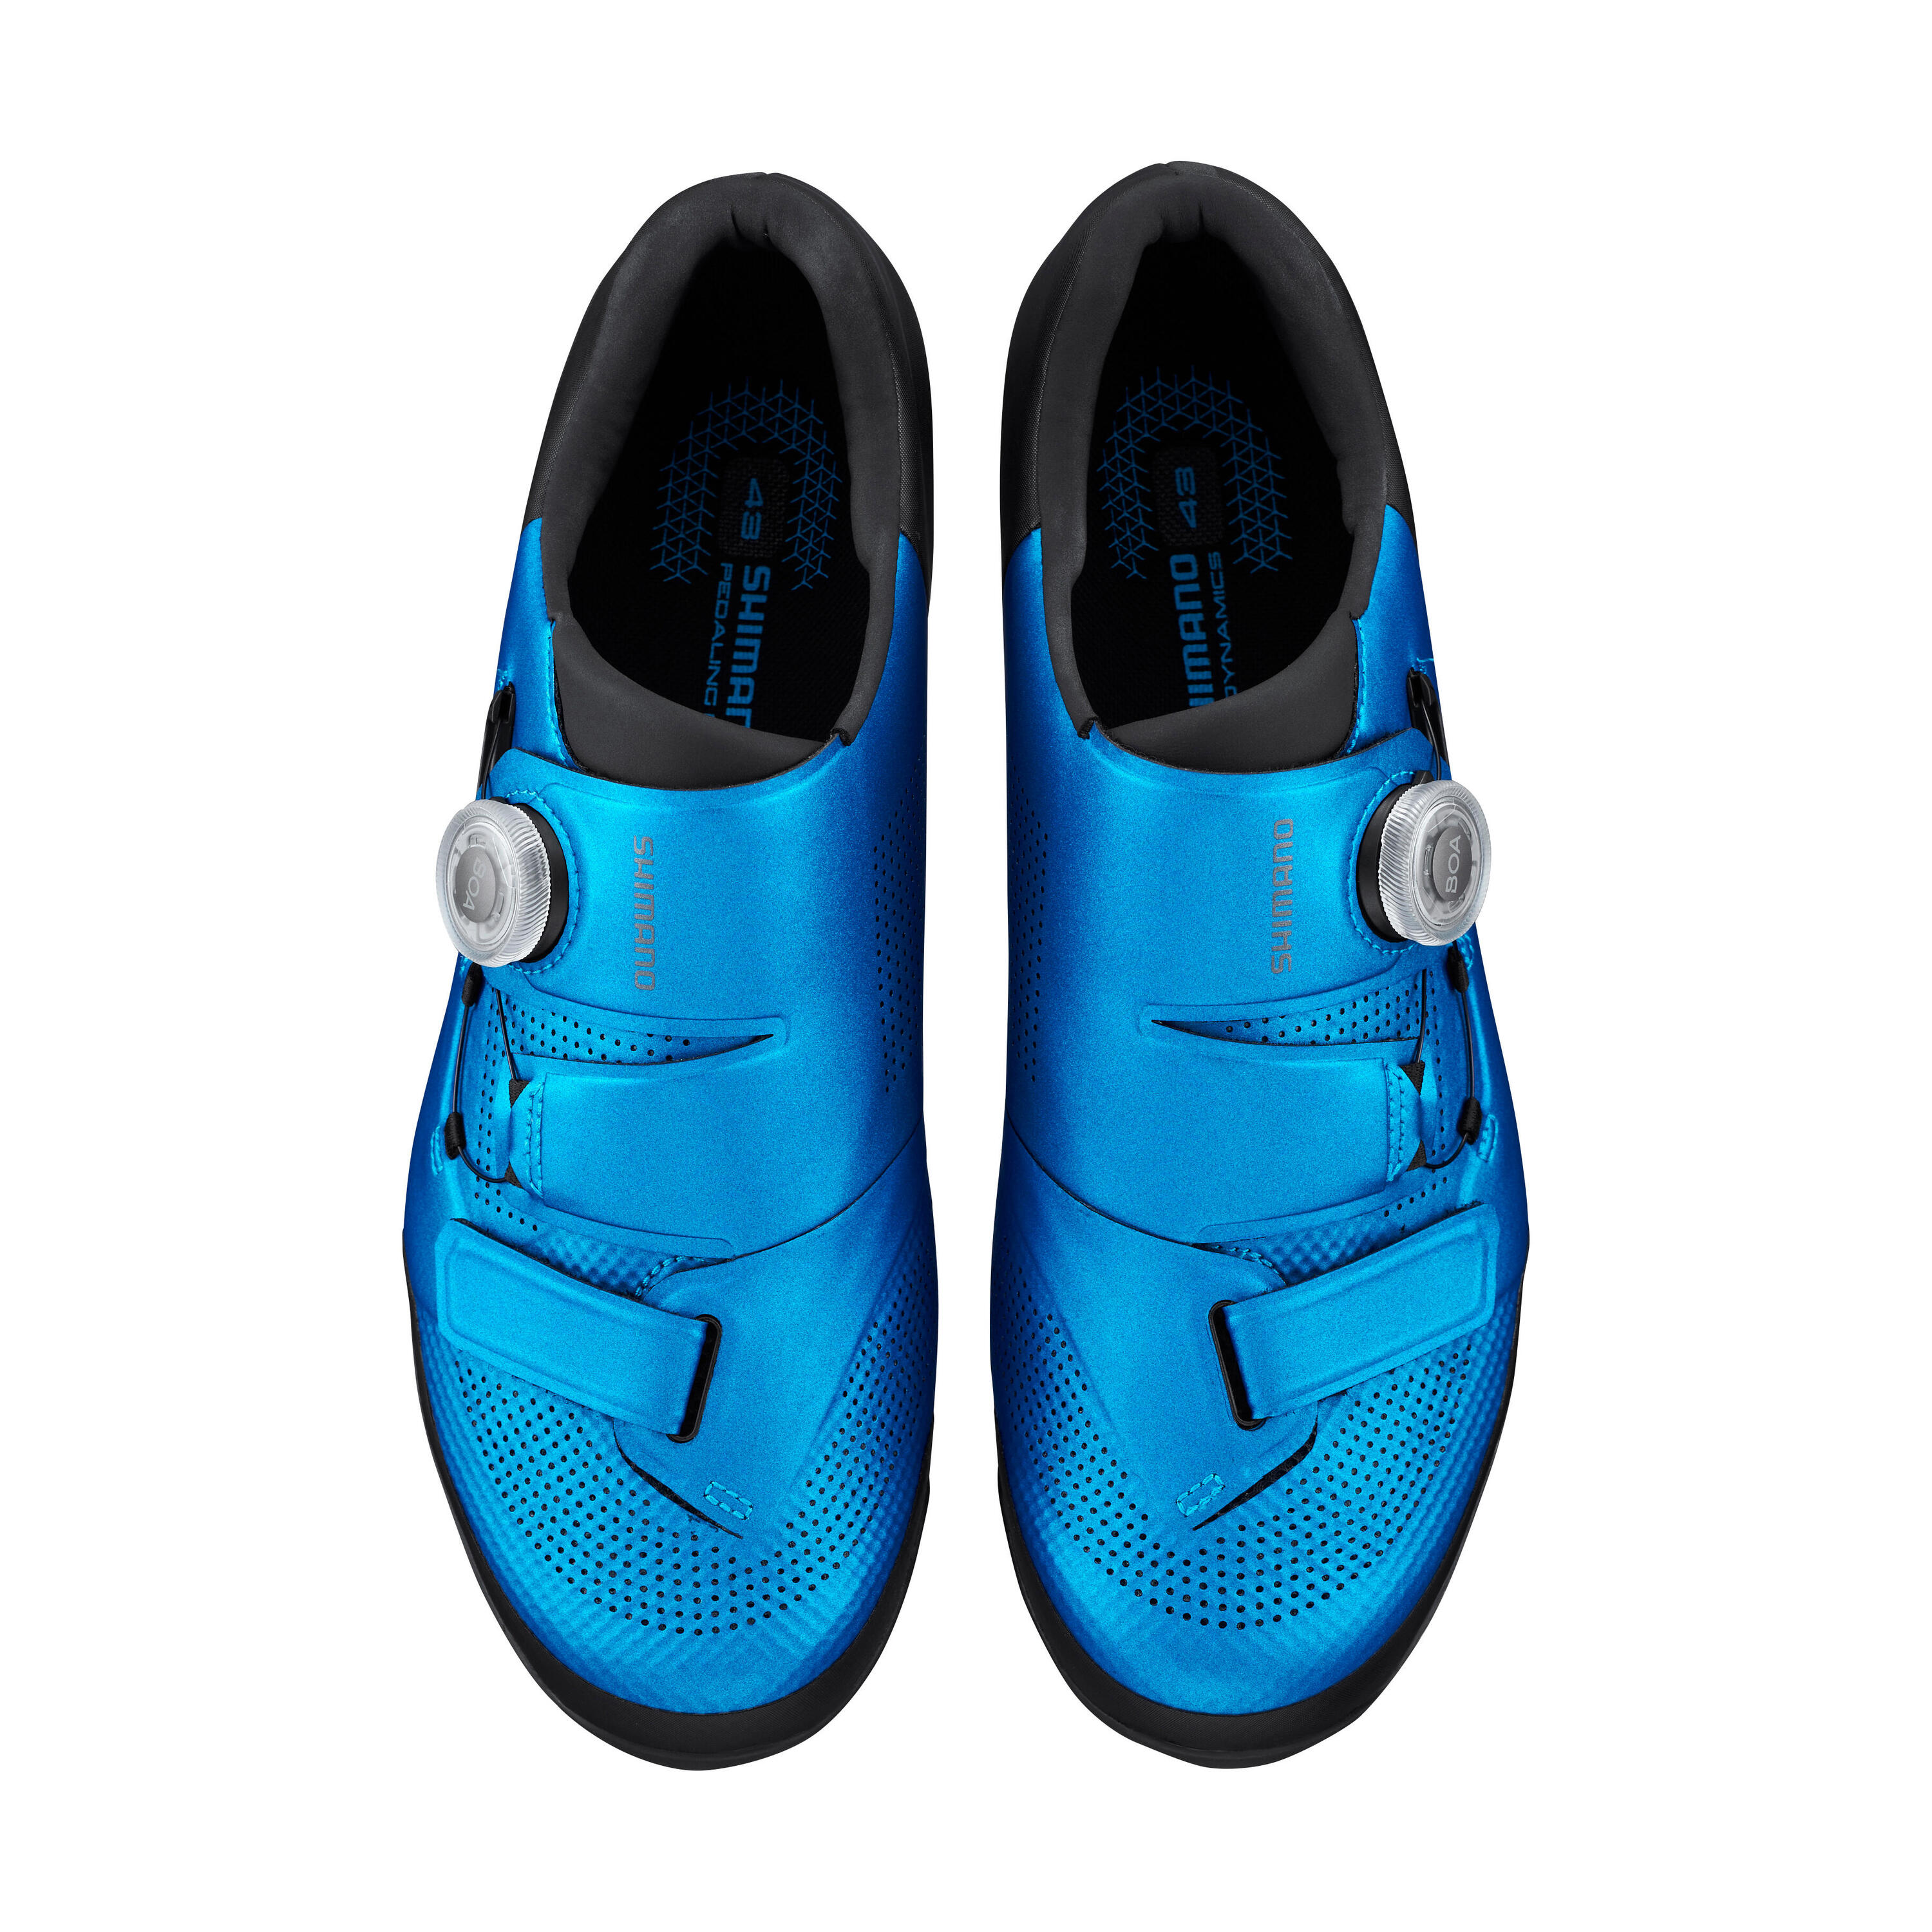 SHIMANO Mountain Bike Shoes SH-XC500 - Blue